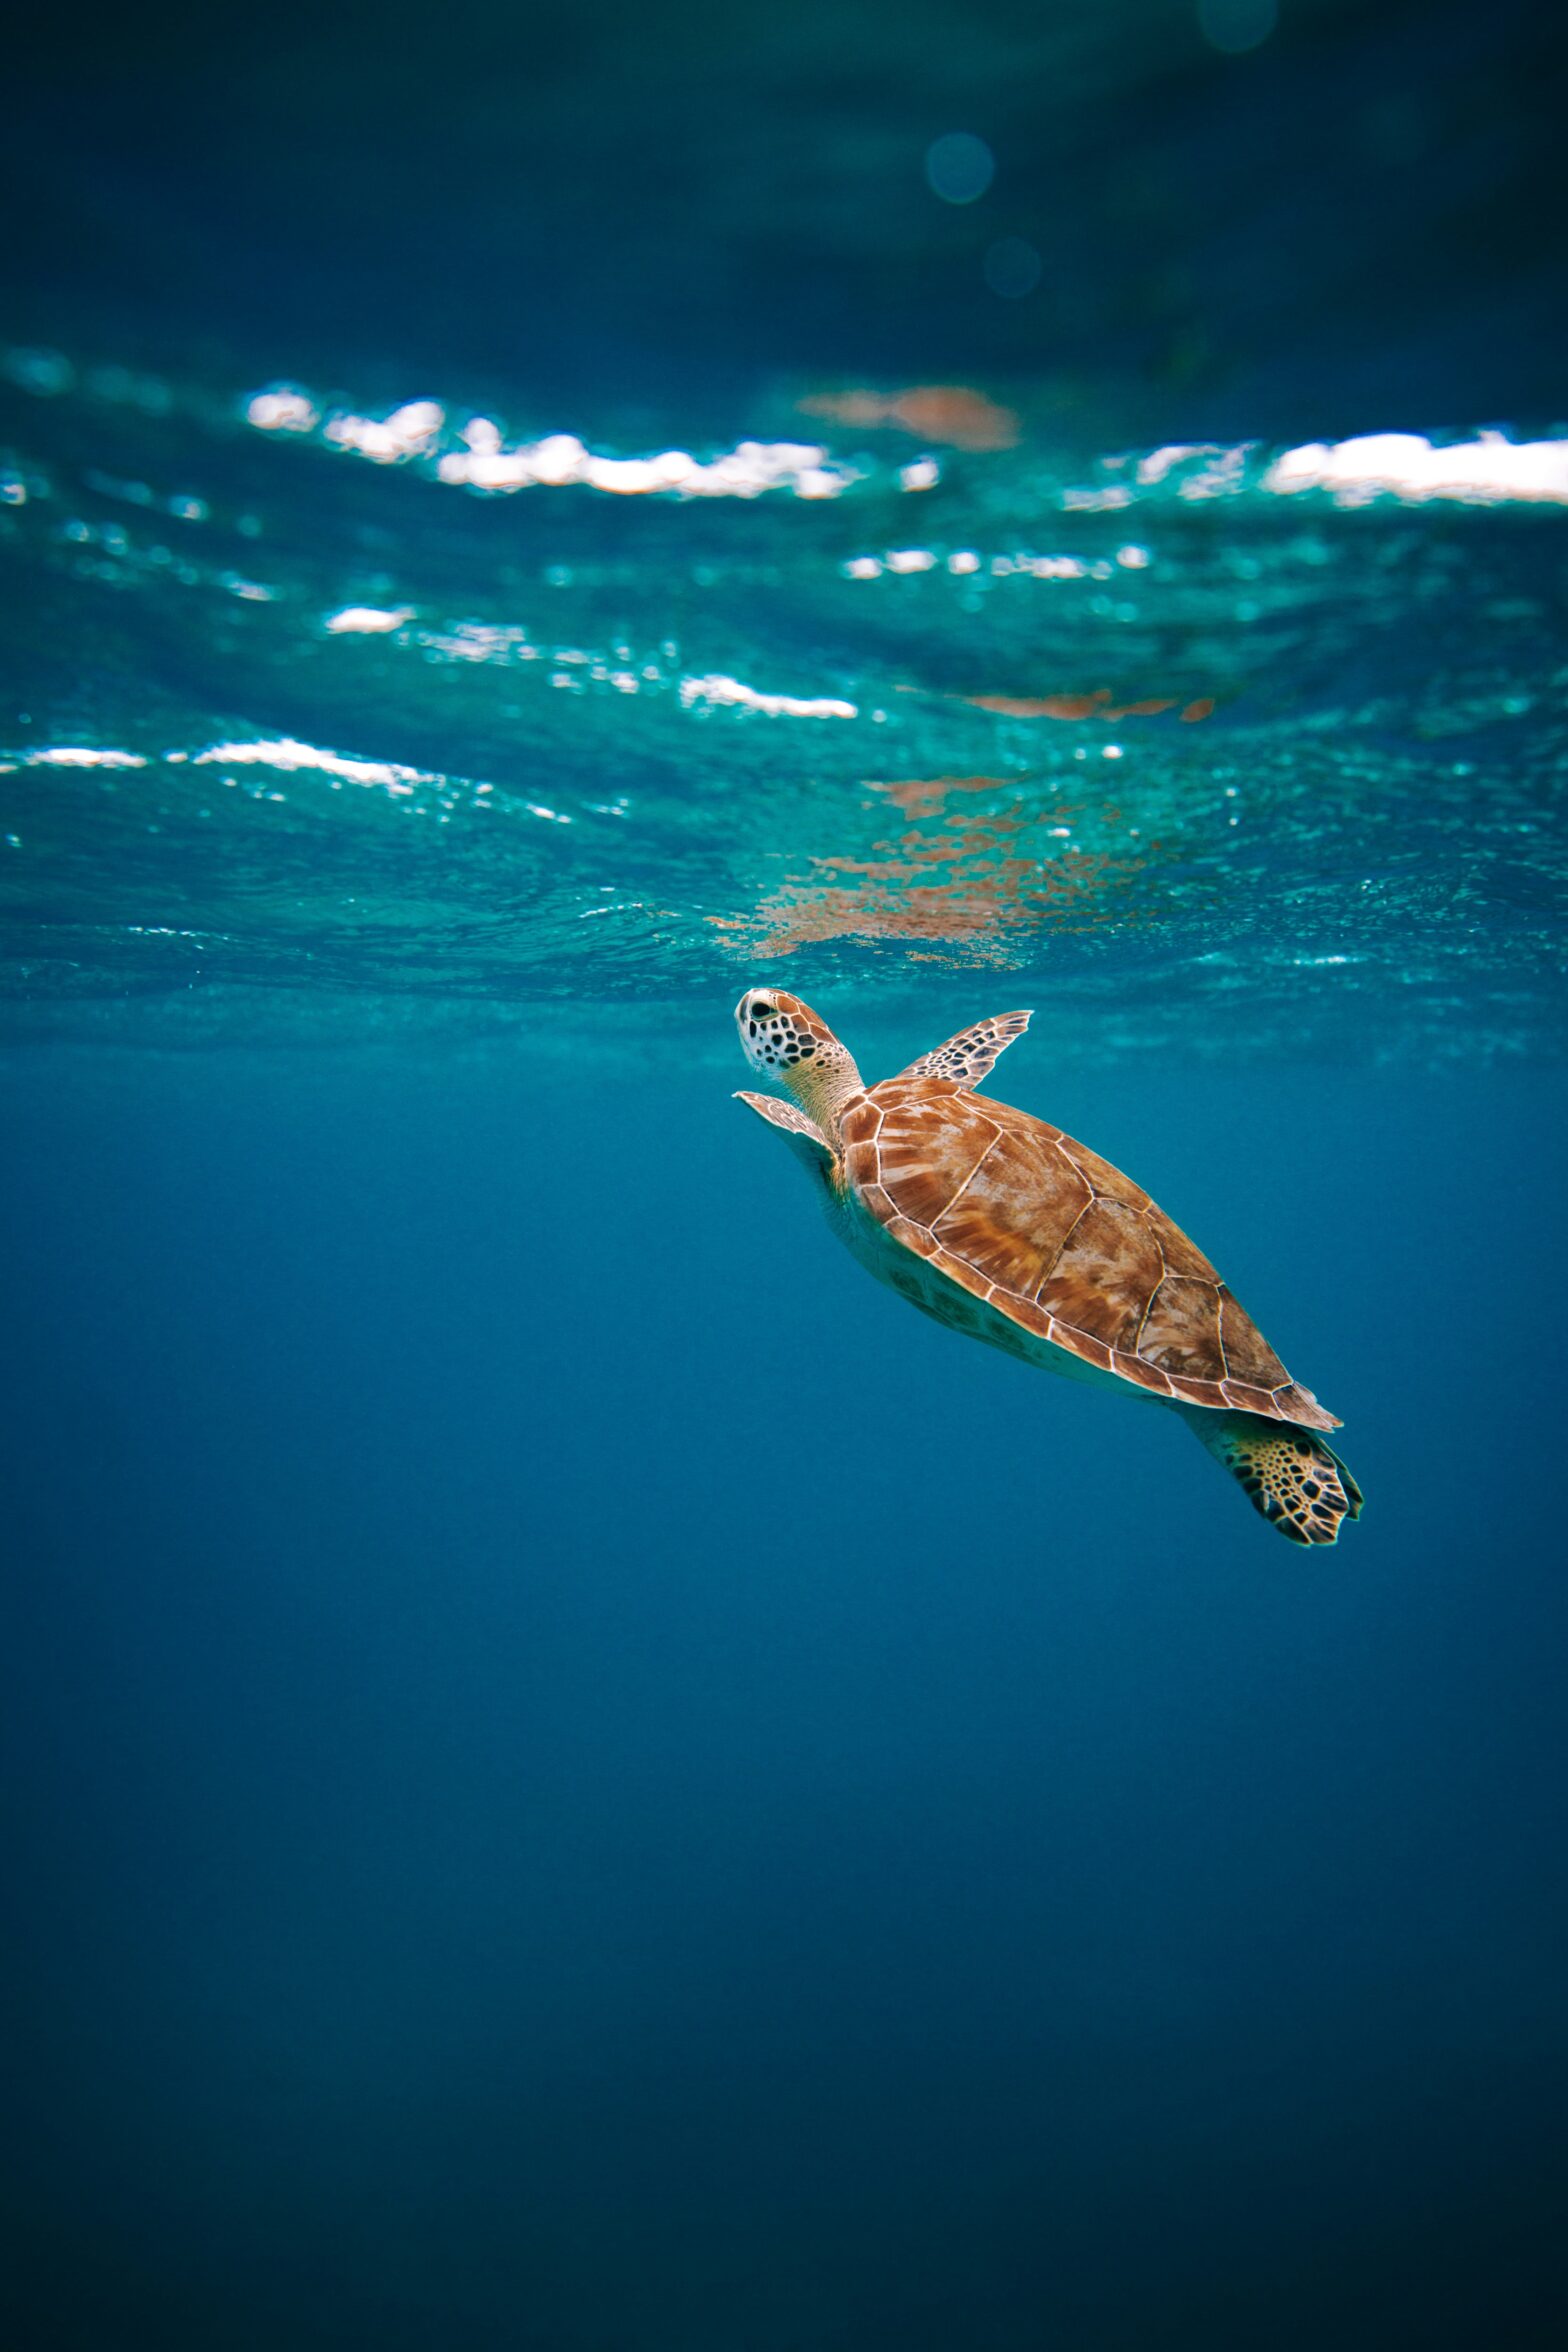 żółw w wodzie oceanu